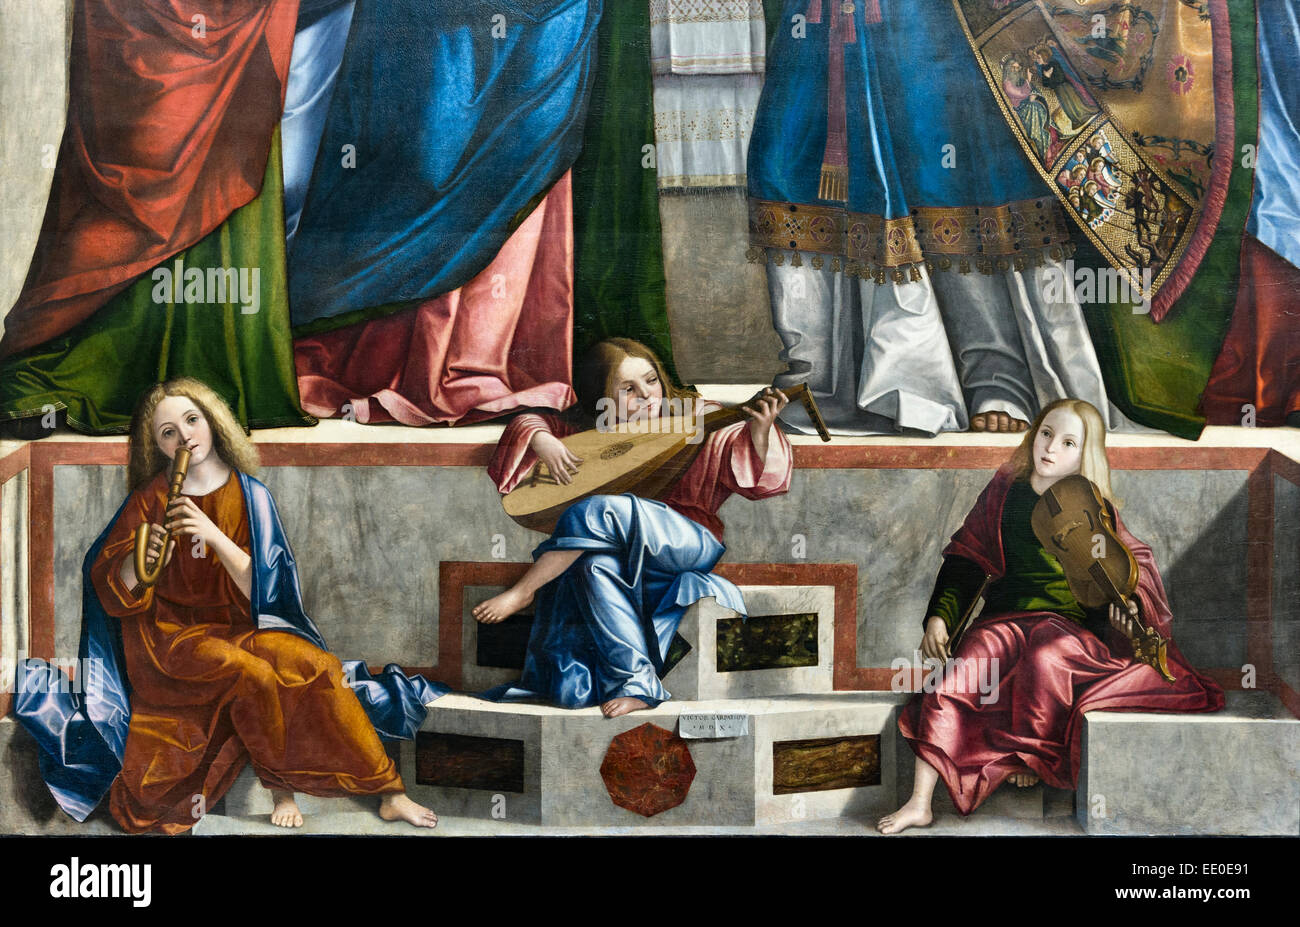 Galerie dell'Accademia, Venise, Italie. 'Présentation du Christ au Temple', Vittore Carpaccio, 1510. Détail montrant de jeunes musiciens Banque D'Images